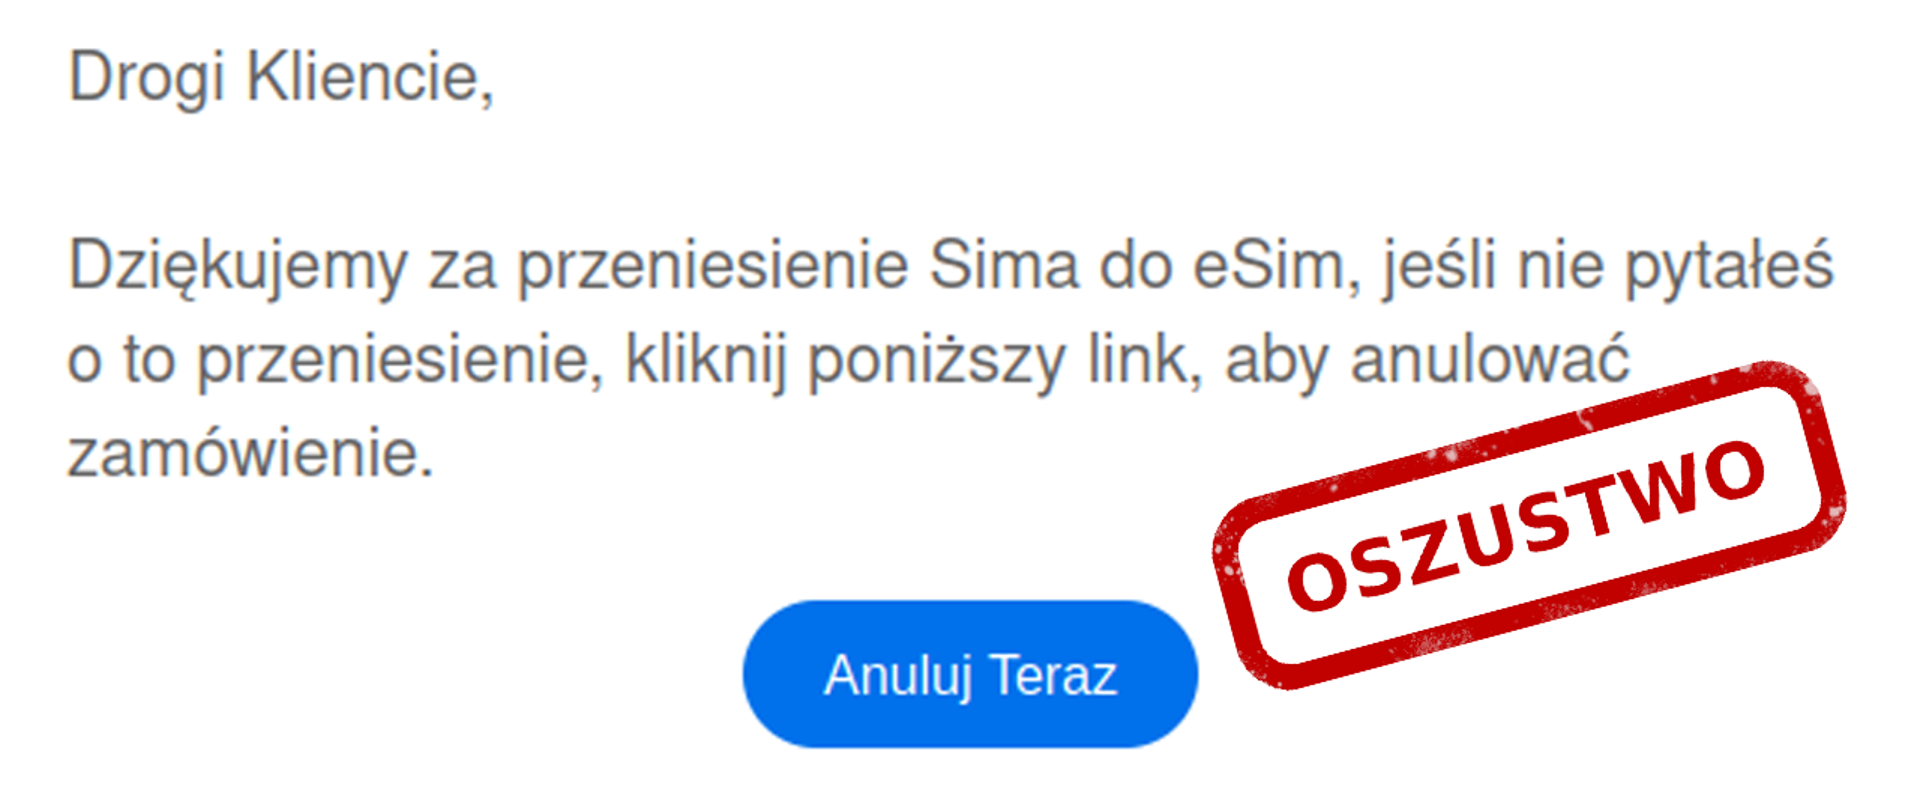 Zdjęcie fałszywej wiadomości sms o treści: Dziękujemy za przeniesienie Sima do eSim, jeśli nie pytałeś o to przeniesienie kliknij poniższy link aby anulować zamówienie